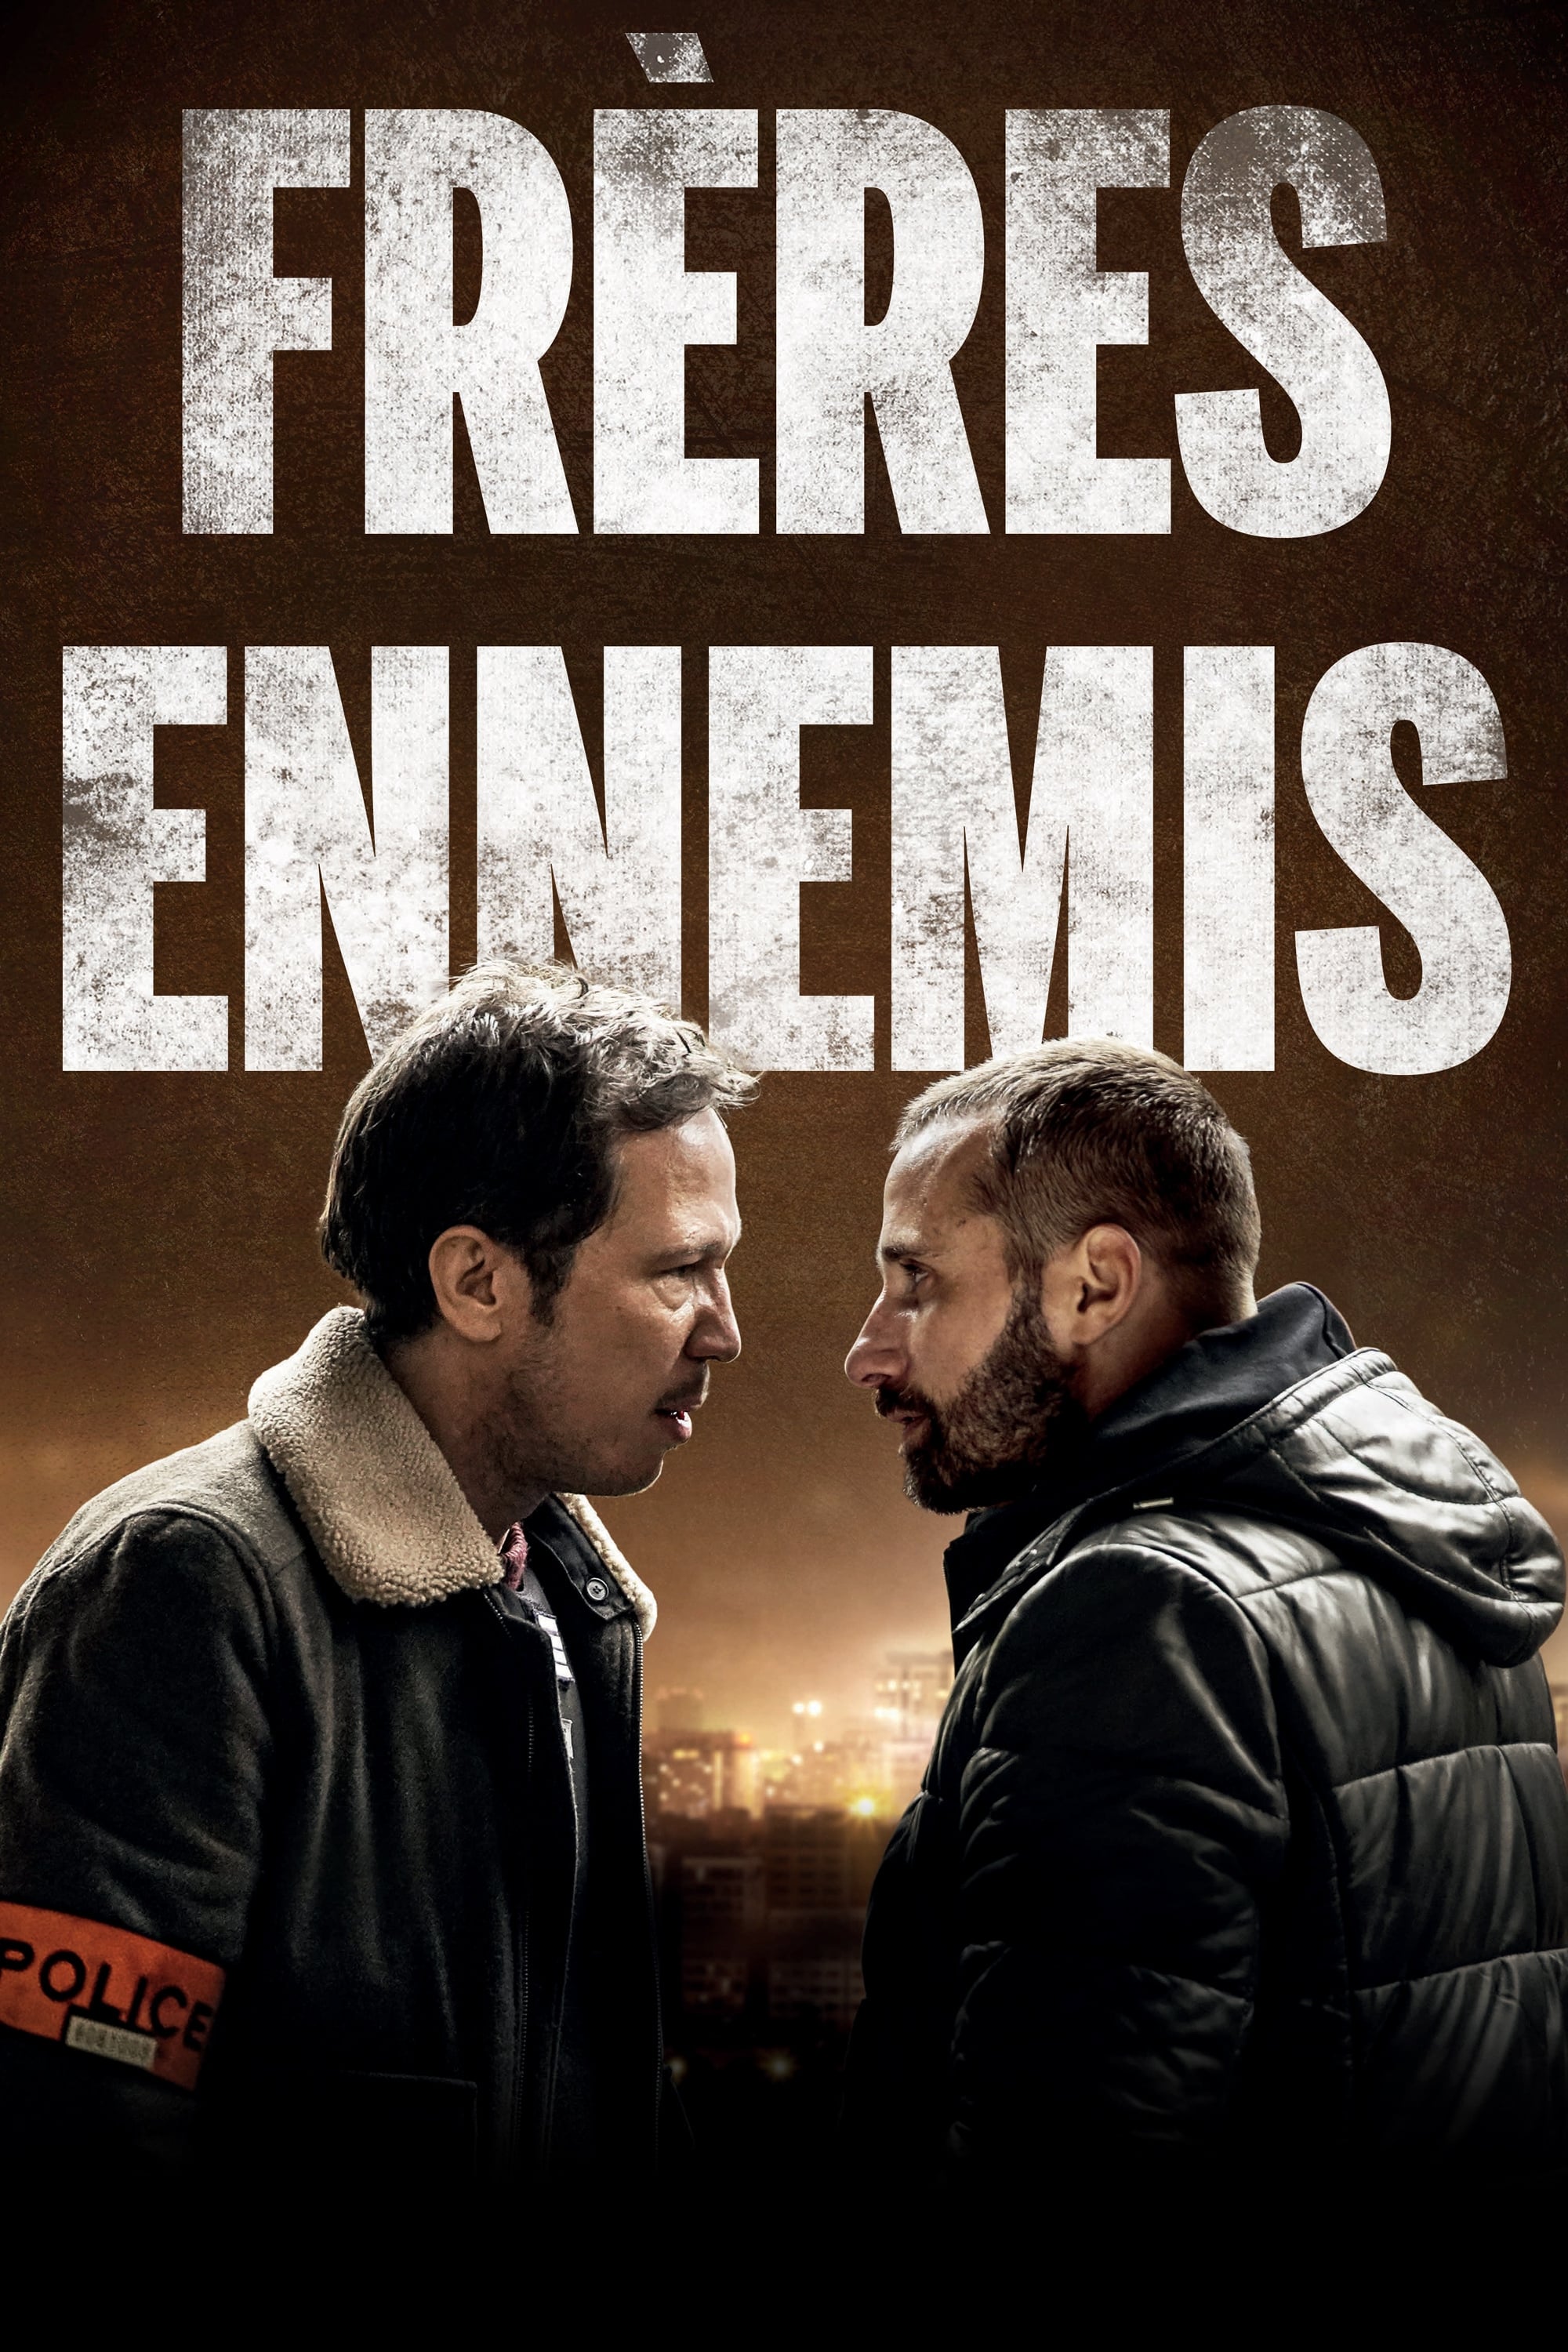 Inimigos Íntimos (2018)